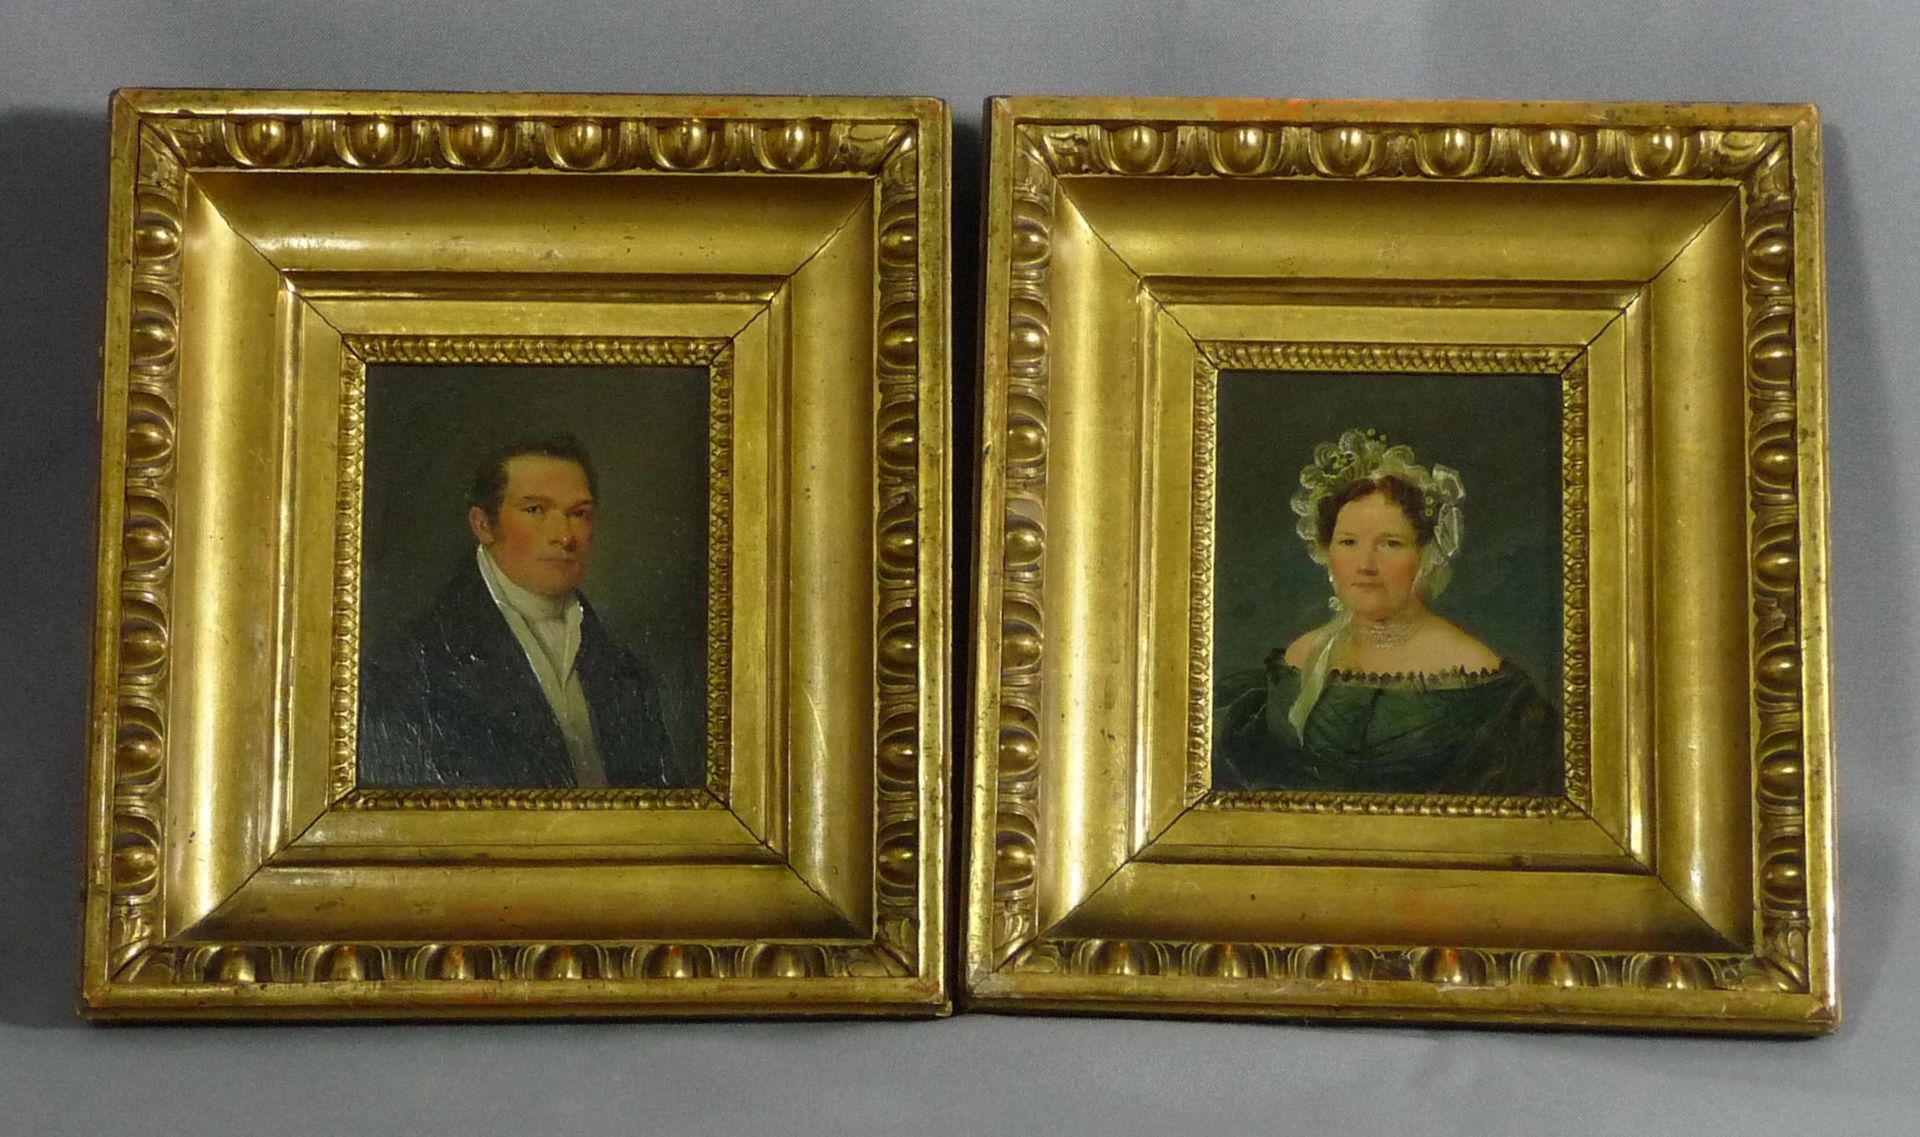 Paar kleine BiedermeierportraitsÖsterreich, um 1830/40Schulterstücke einer Dame mit Spitzenhaube und